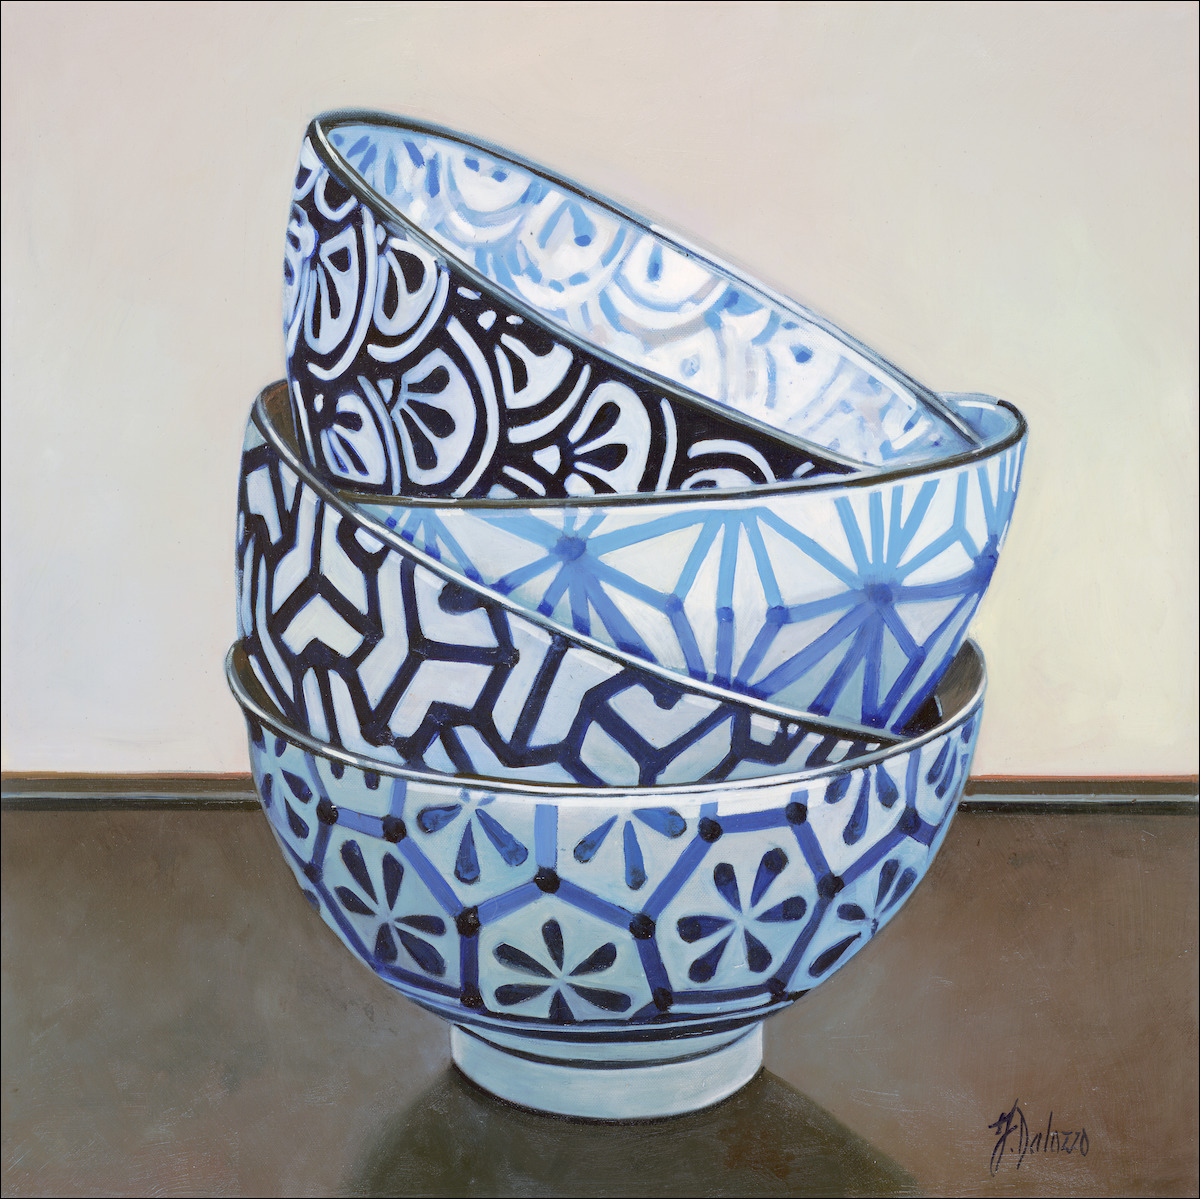 Porcelain Ceramics Still Life "Monyou Bowls" Original Artwork by Judith Dalozzo